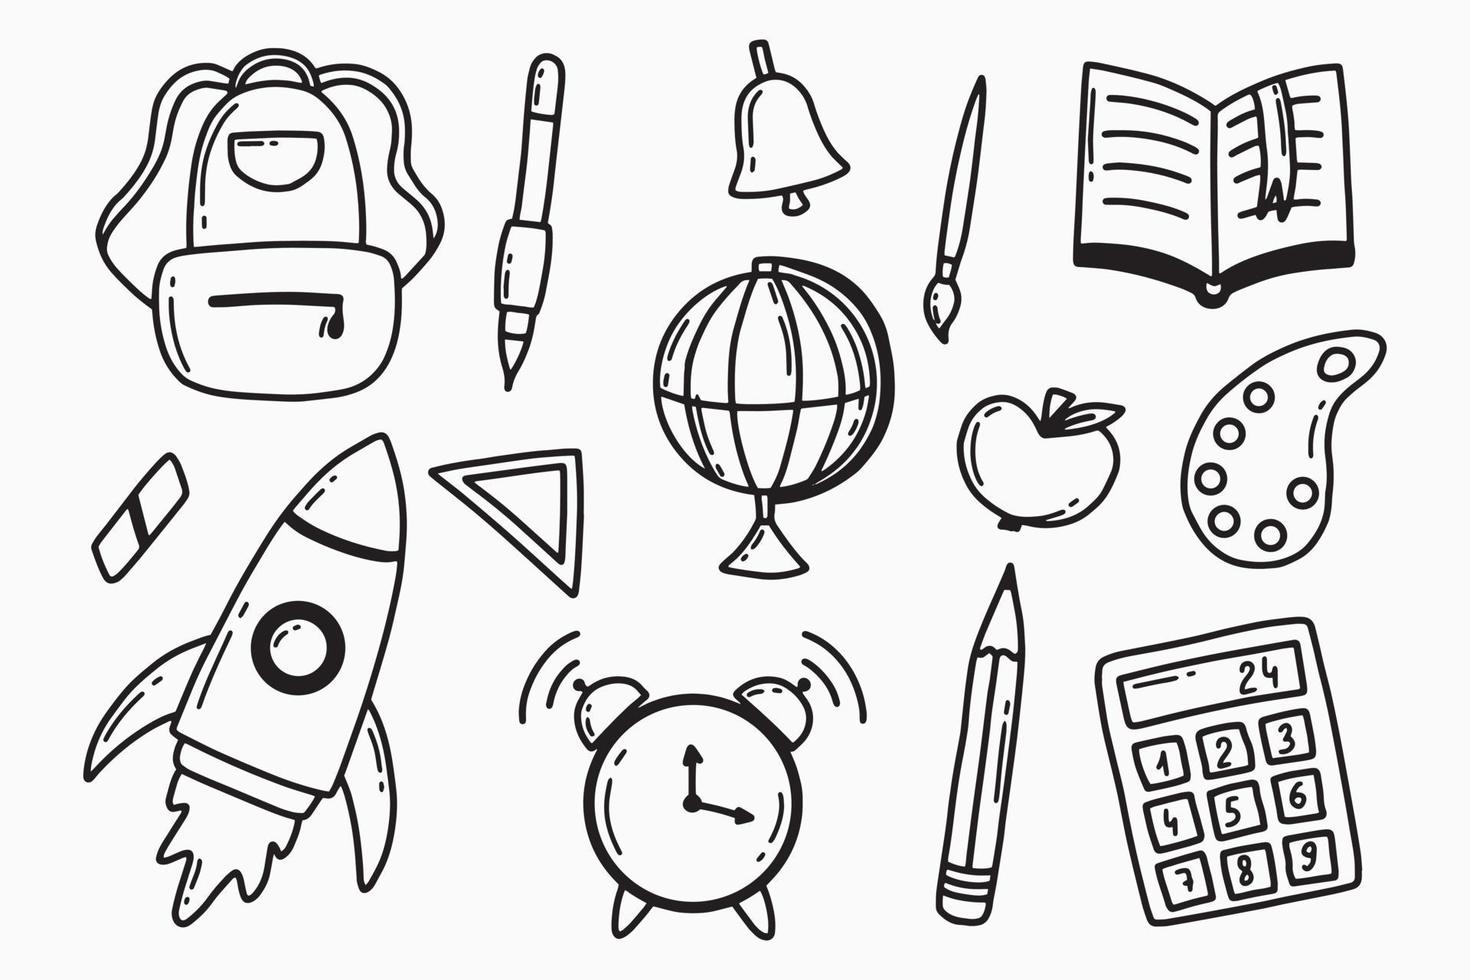 tillbaka till skolan set. doodle stil. skolan element set. jordglob, ryggsäck, penna, kalkylator, väckarklocka, penna. vektor illustration.